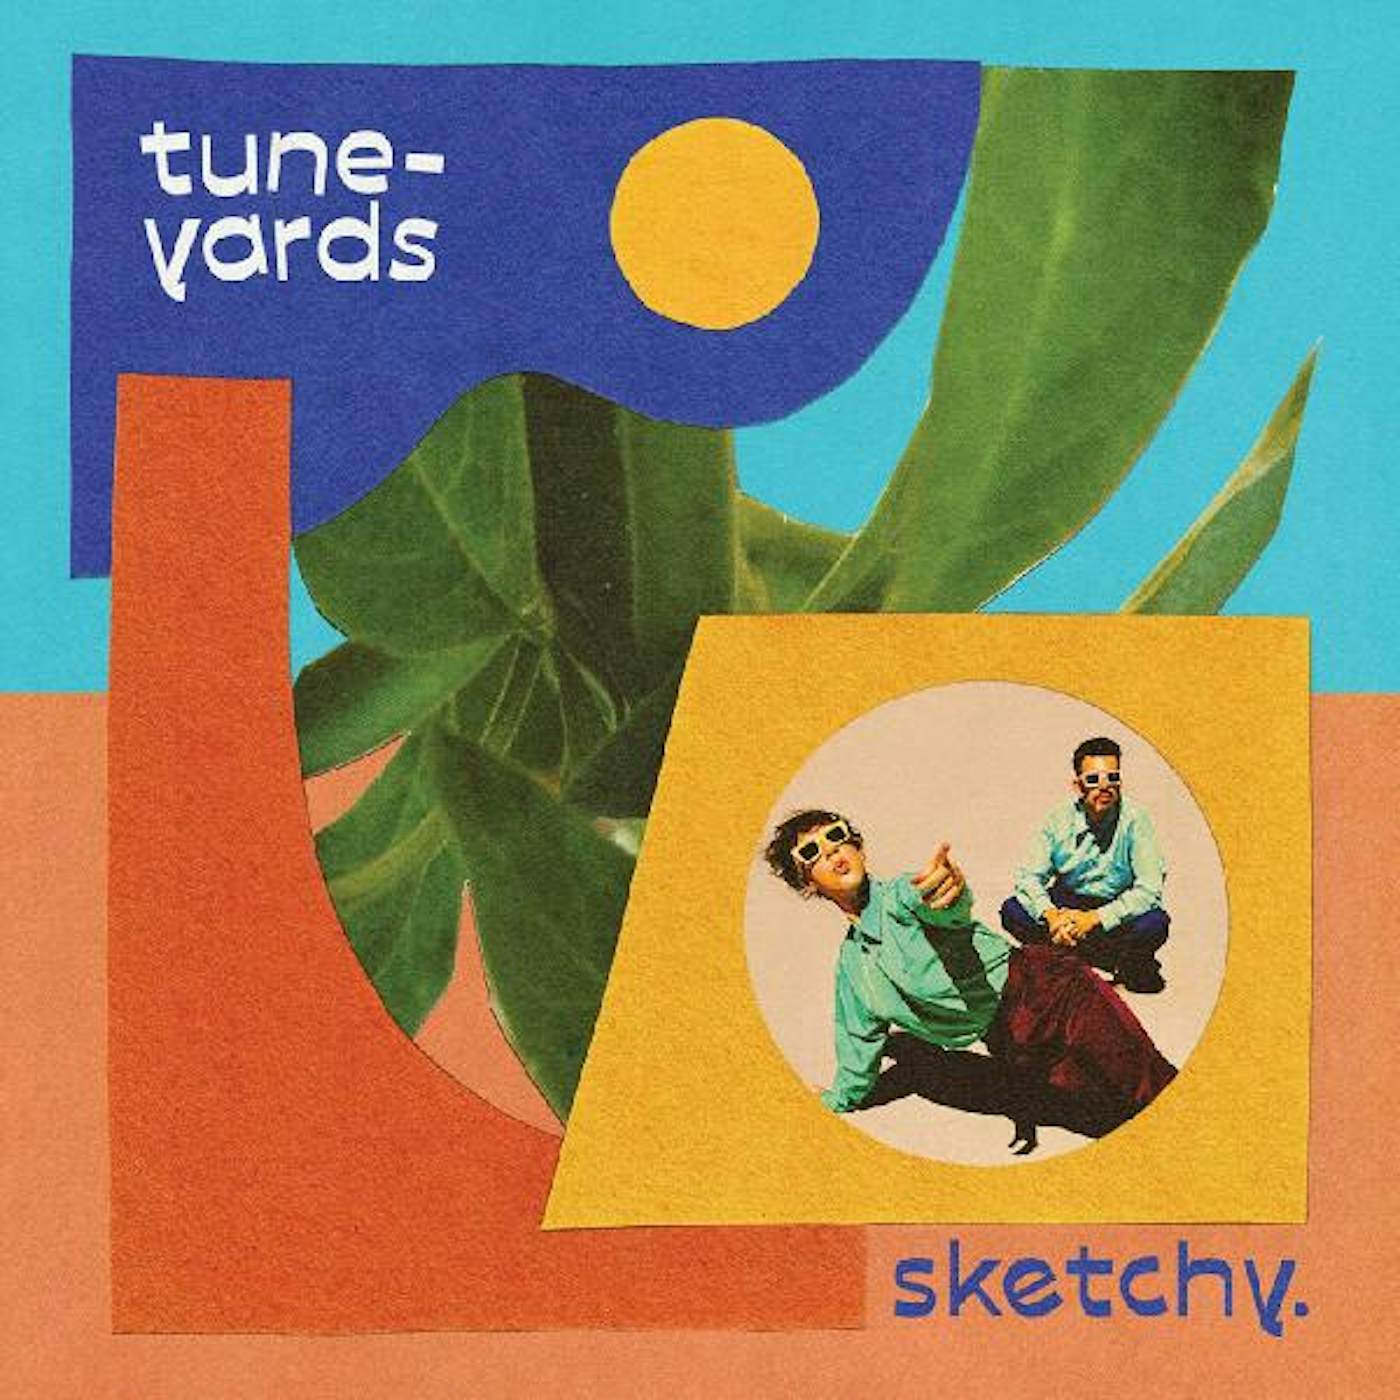 Tune-Yards sketchy. Vinyl Record